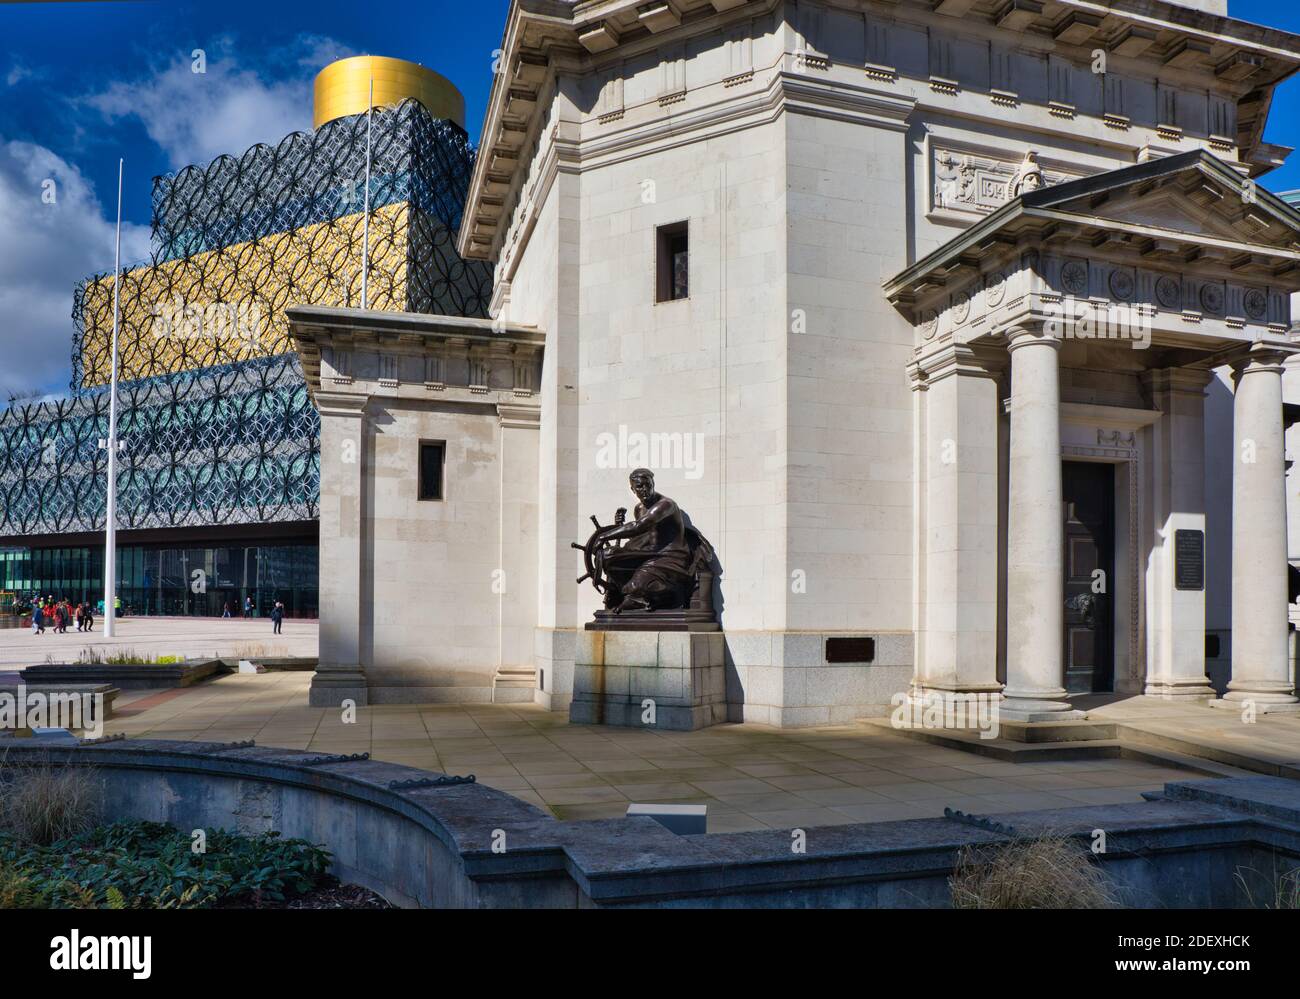 Gedenkstätte der Gedächtnishalle erster Weltkrieg mit Biirmingham City Library im Hintergrund, Centenary Square, Birmingham, West Midlands, England Stockfoto